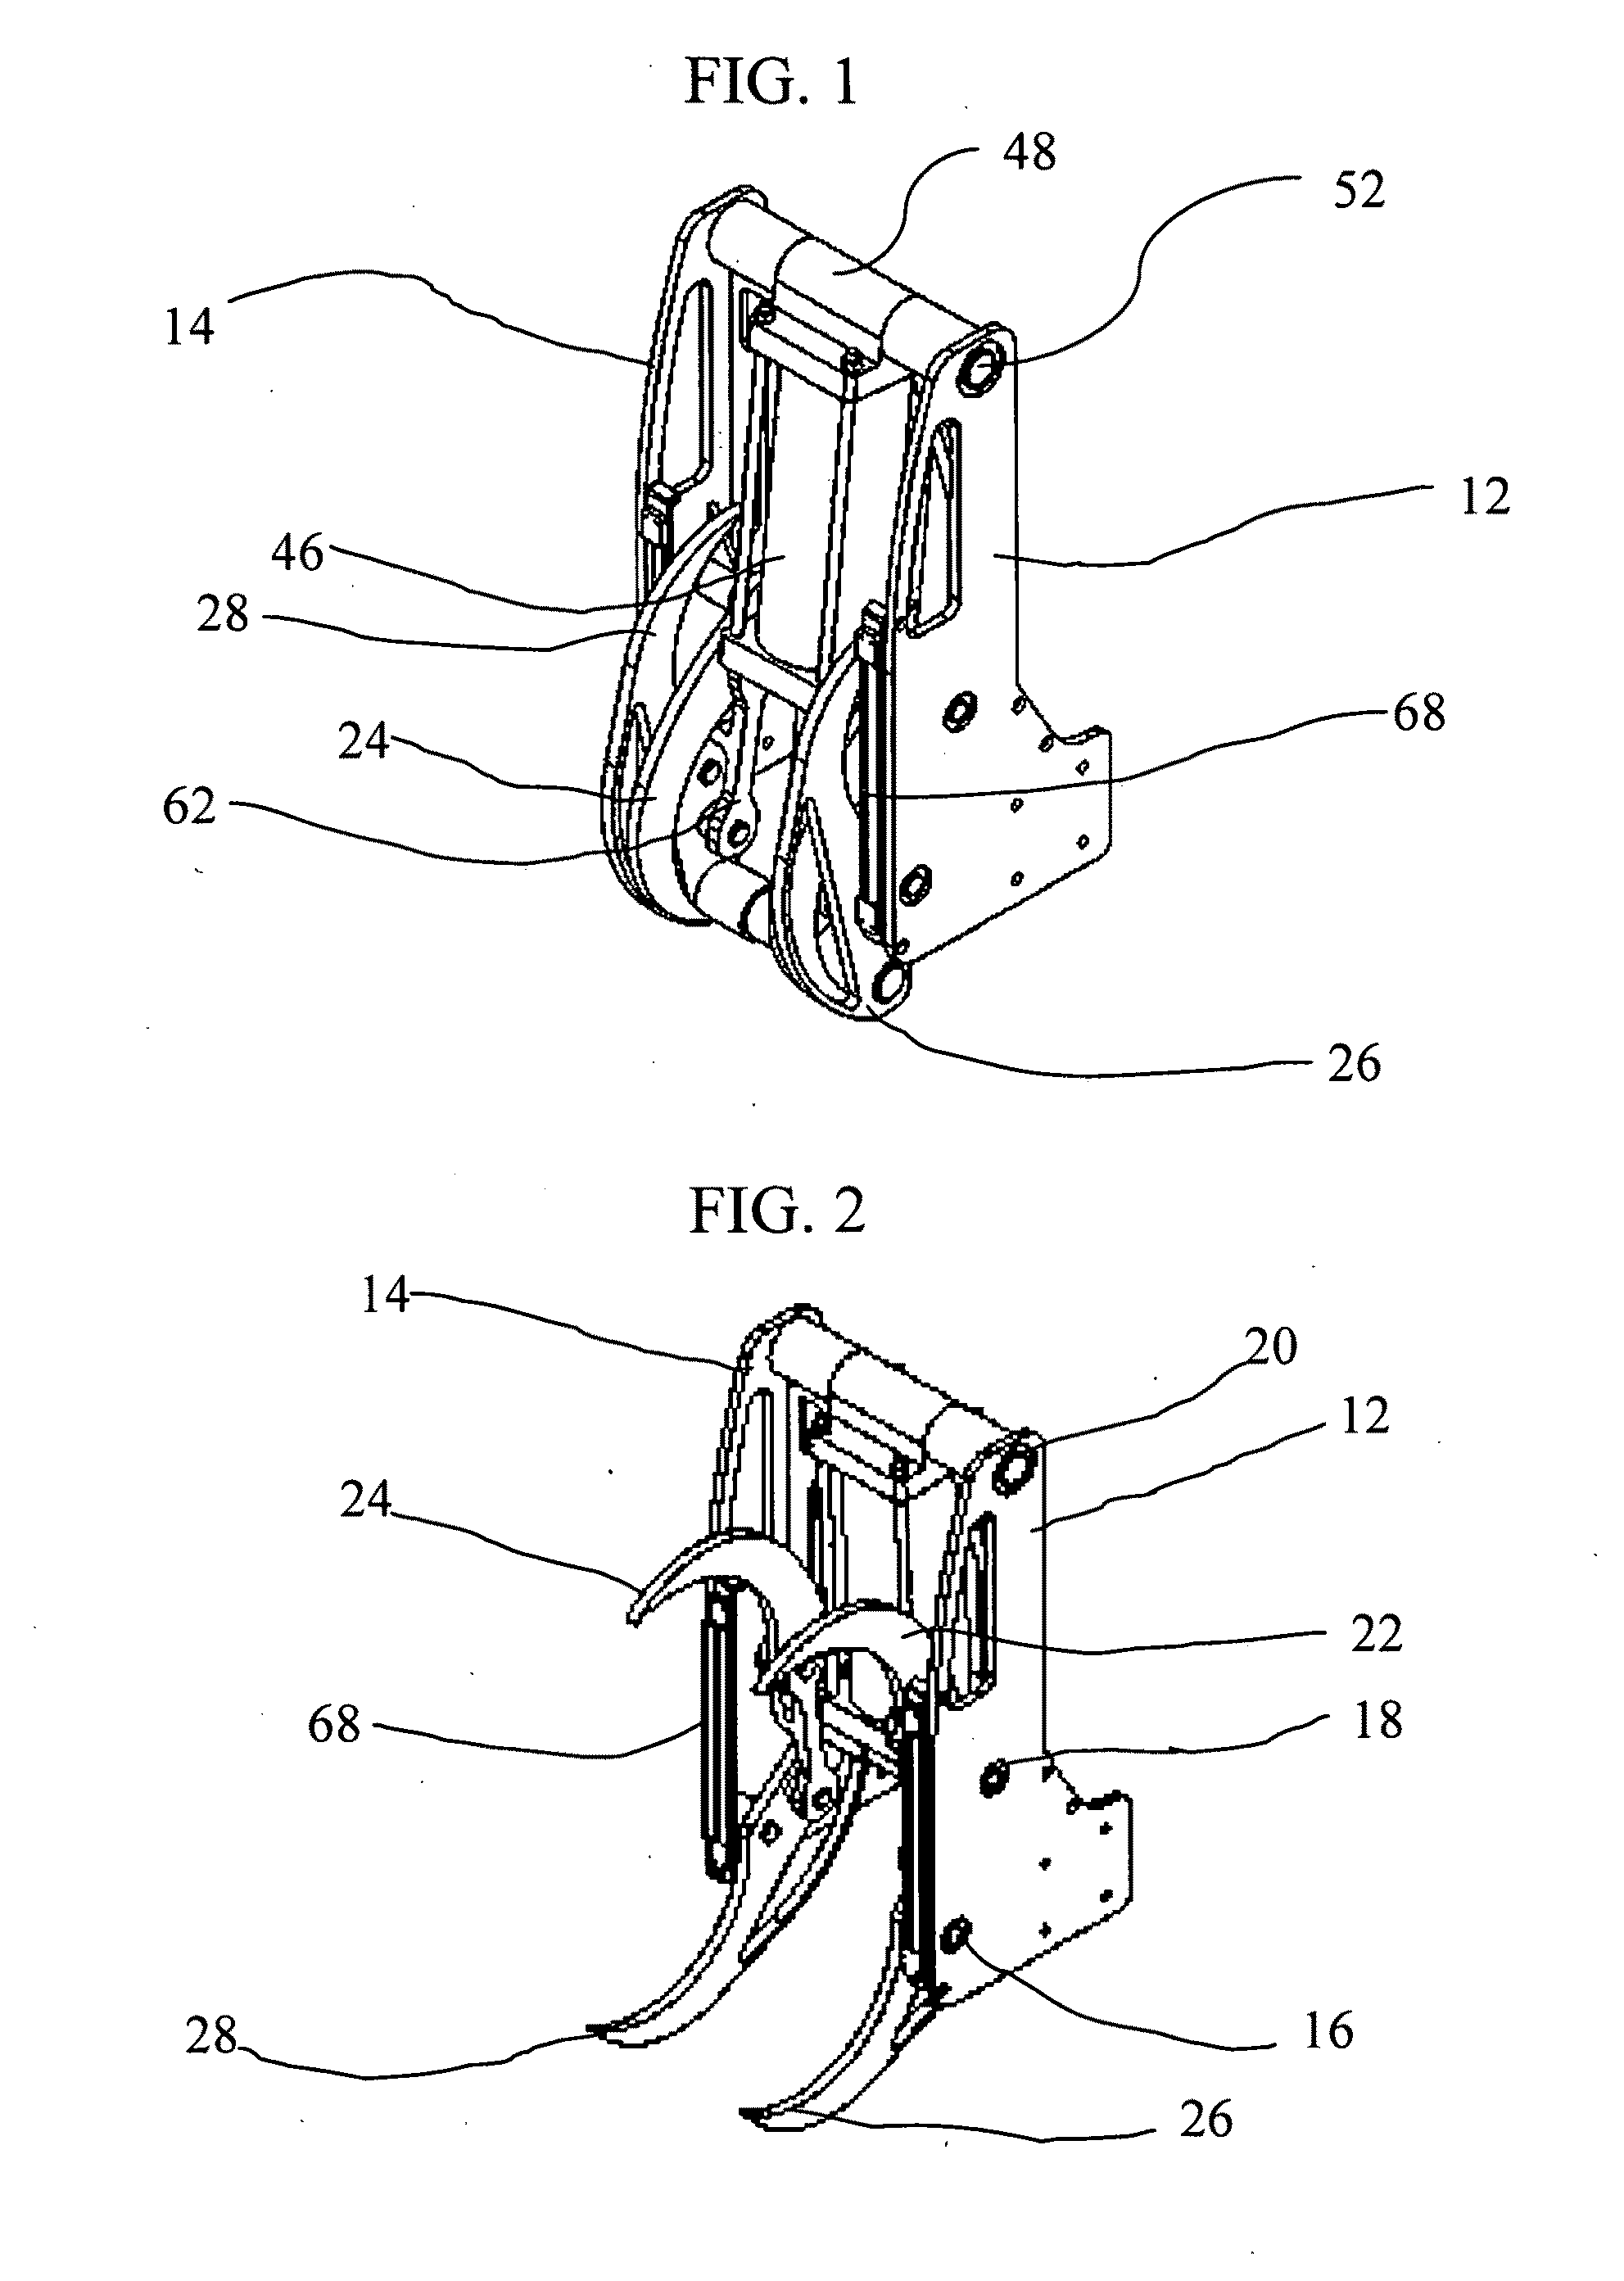 Vehicle grasping apparatus